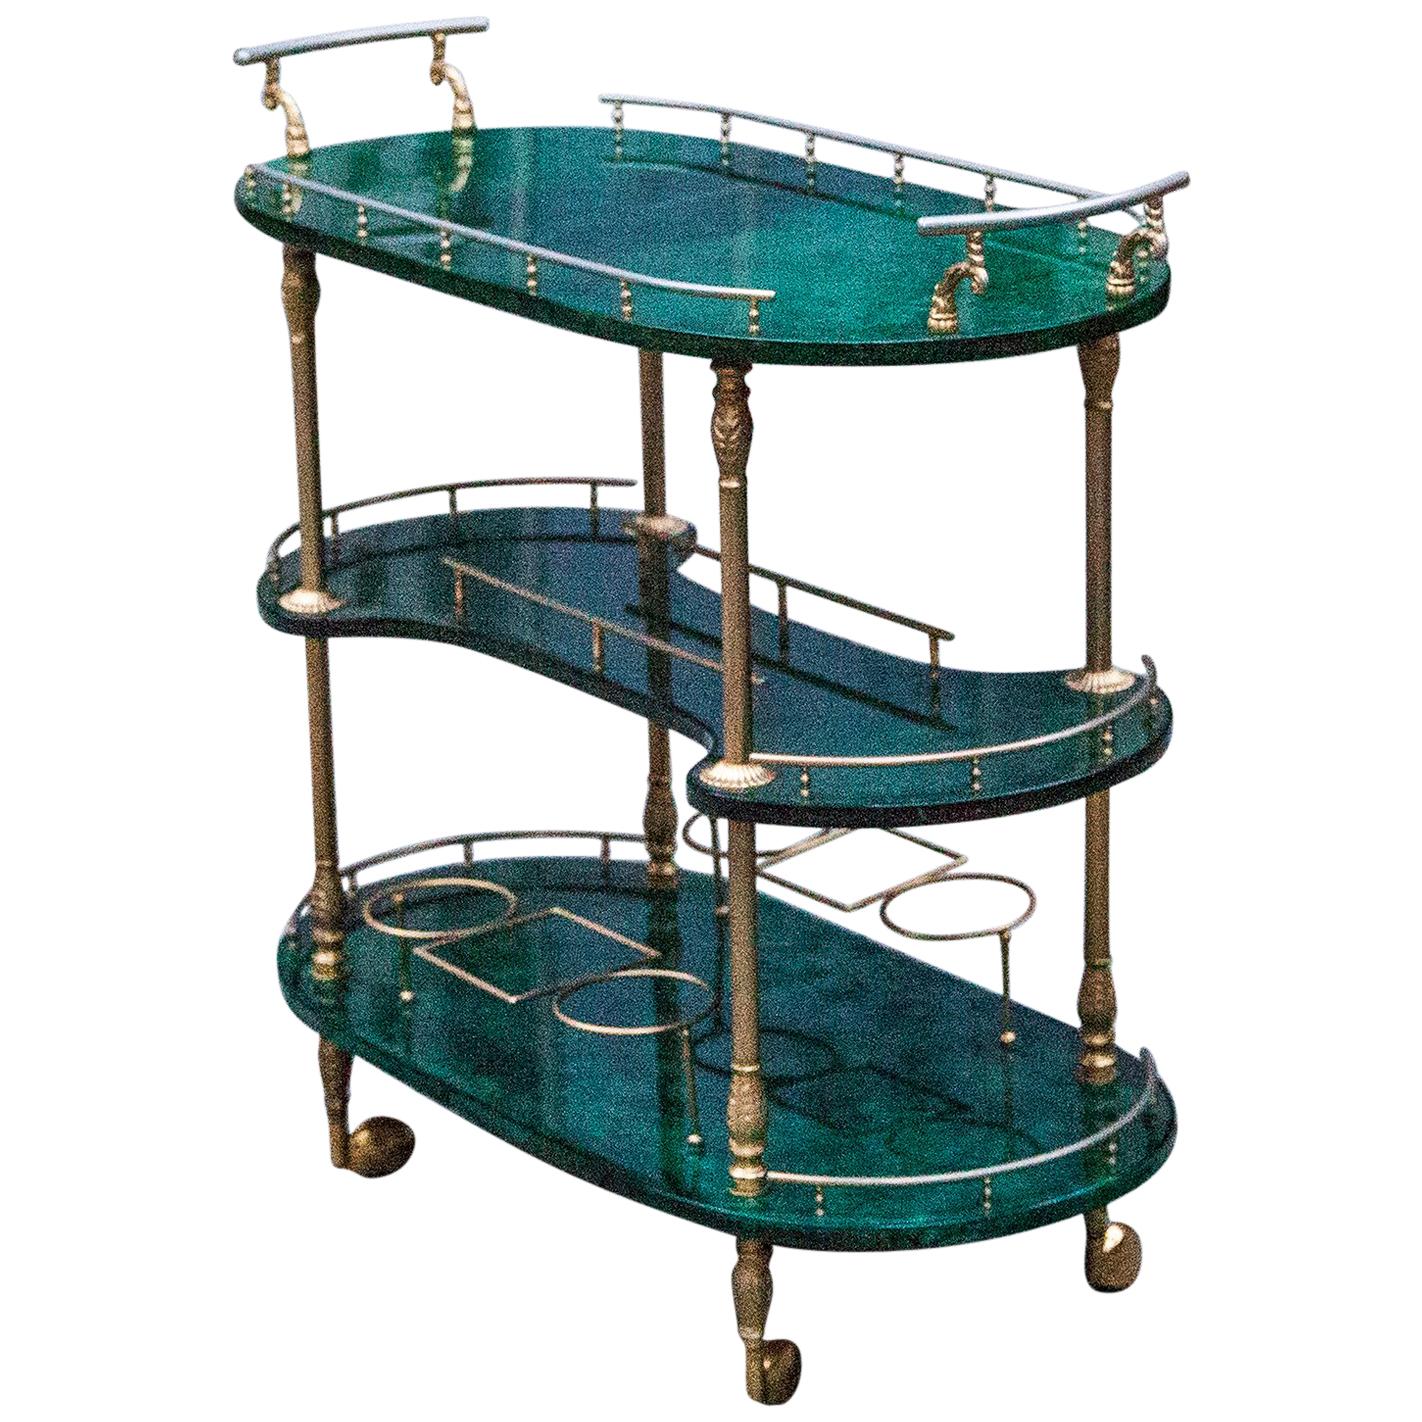 Aldo Tura Oval Green Three-Story Bar Cart